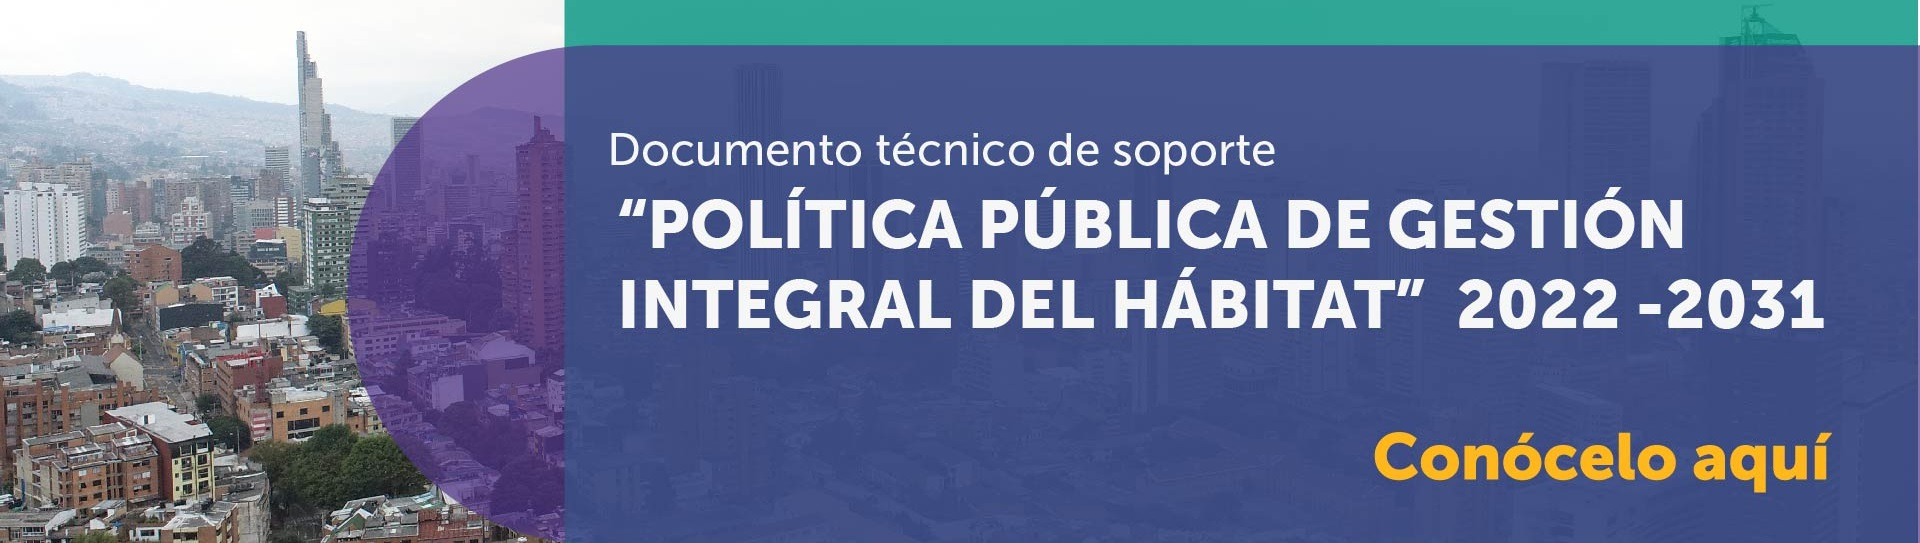 Documento técnico de soporte "Política pública de gestión integral del Hábitat" 2022-2031